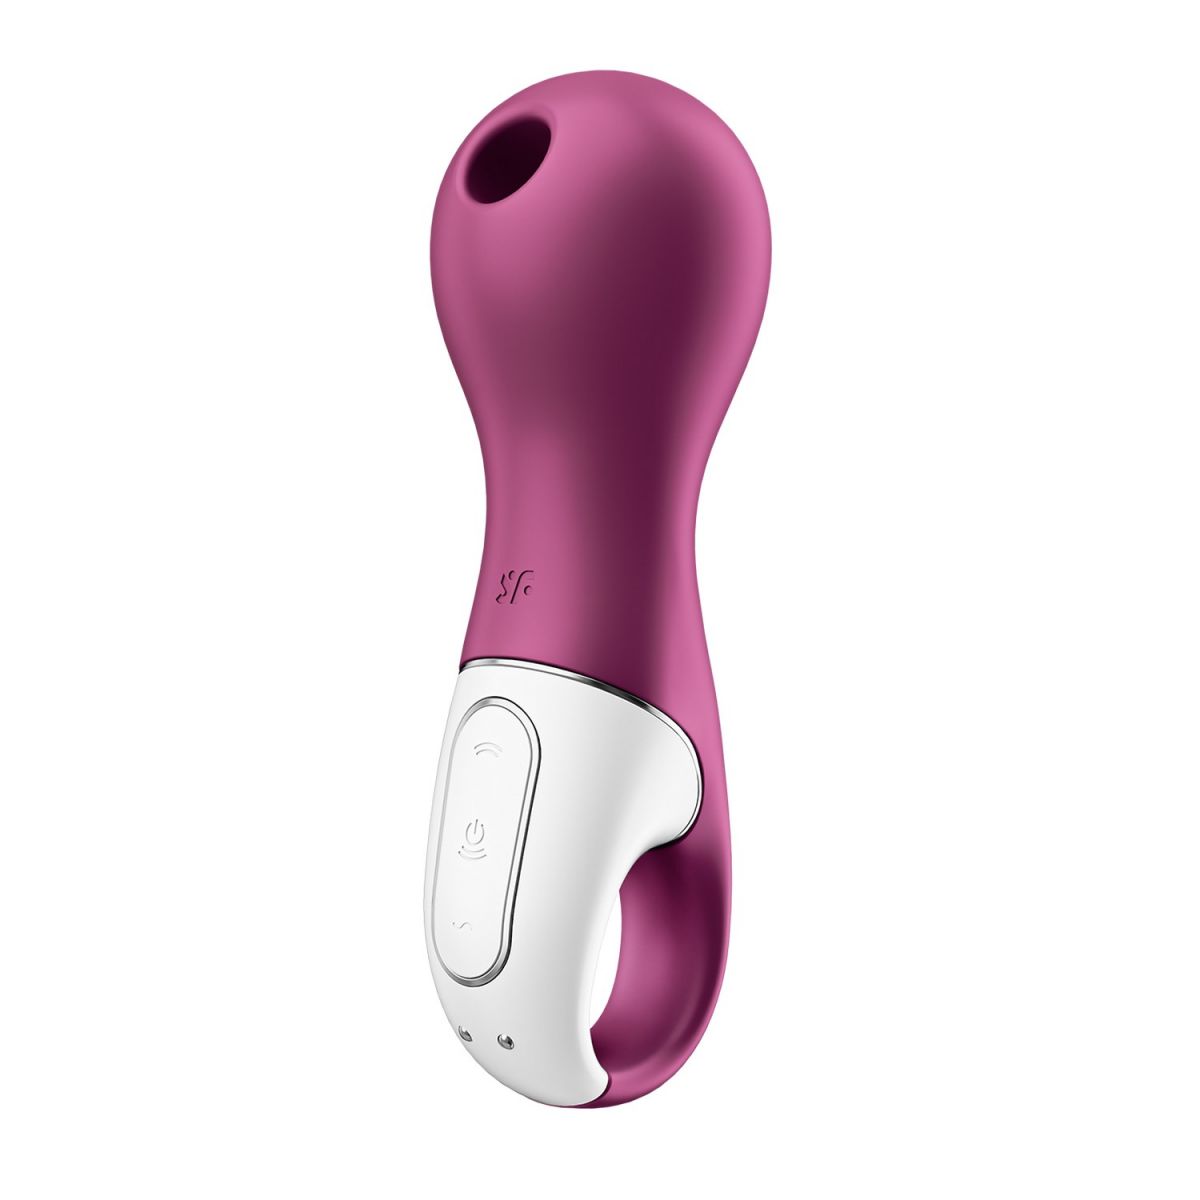 Lucky Libra сочетает в себе инновационную технологию Satisfyer Airpulse с интенсивными вибрациями. Одновременная стимуляция клитора с помощью волн давления и вибрации. Изготовлен из сверхмягкого, безвредного для кожи медицинского силикона. <br><br>  Satisfyer Lucky Libra знает, как возбудить и соблазнить новичков в секс-игрушках. Благодаря сочетанию инновационной вакуум-волновой технологии Satisfyer с глубокими вибрациями этот вибратор дарит интенсивные оргазмы, заставляя тебя дрожать от наслаждения. <br><br>  Его прочный корпус и накладная головка из мягкого силикона обеспечивают целенаправленную, чувственную стимуляцию клитора, а ручка-держатель гарантирует, что он не ускользнет от тебя даже в самые неистовые моменты. И их наверняка будет немало. <br><br>  Благодаря 11 уровням интенсивности и 10 различным программам вибрации этот вибратор предлагает бесчисленное множество приятных комбинаций. Программами можно управлять интуитивно и независимо друг от друга с помощью панели управления на держателе.<br><br>  Как и все вибраторы Satisfyer, Lucky Libra особенно приятен к коже и гигиеничен благодаря своей поверхности из безопасного для тела силикона. Кроме того, этот вакуум-волновой вибратор является водонепроницаемым (IPX7), позволяя получить наслаждение даже в душе или ванне. А если твой маленький друг разрядится, его можно будет с легкостью зарядить с помощью прилагаемого USB-кабеля для зарядки.